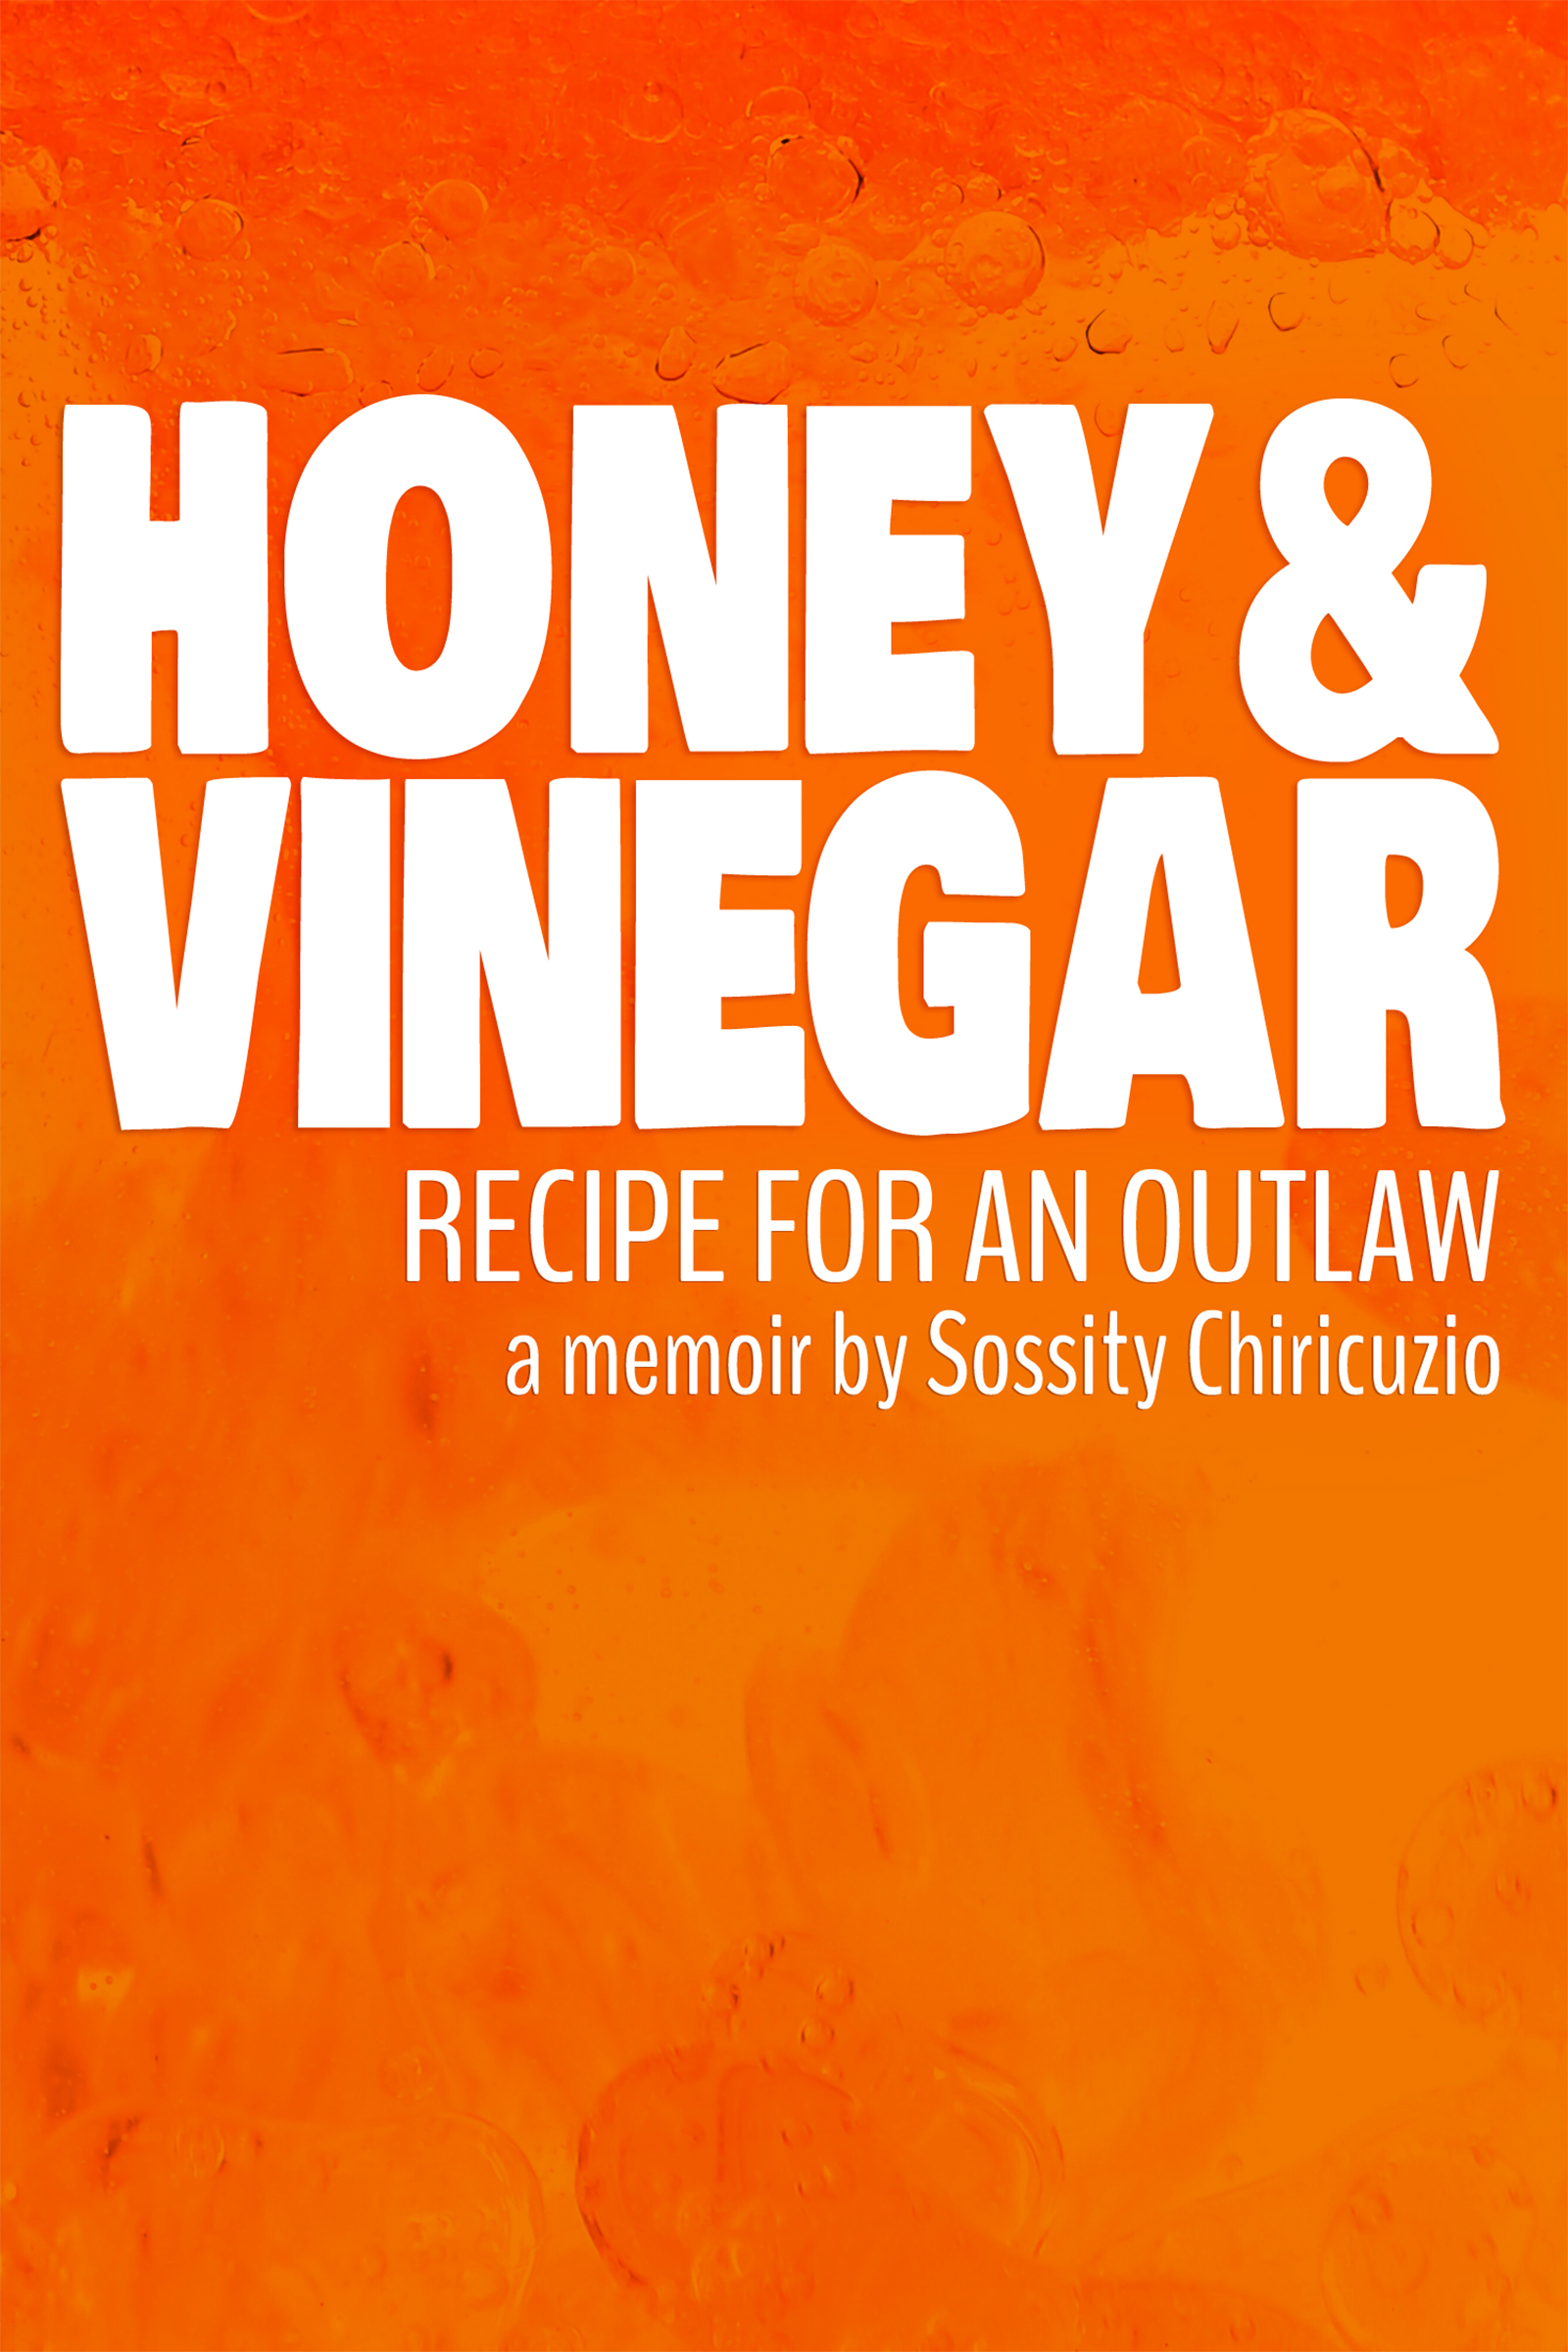 Cover of Honey & Vinegar: recipe for an outlaw